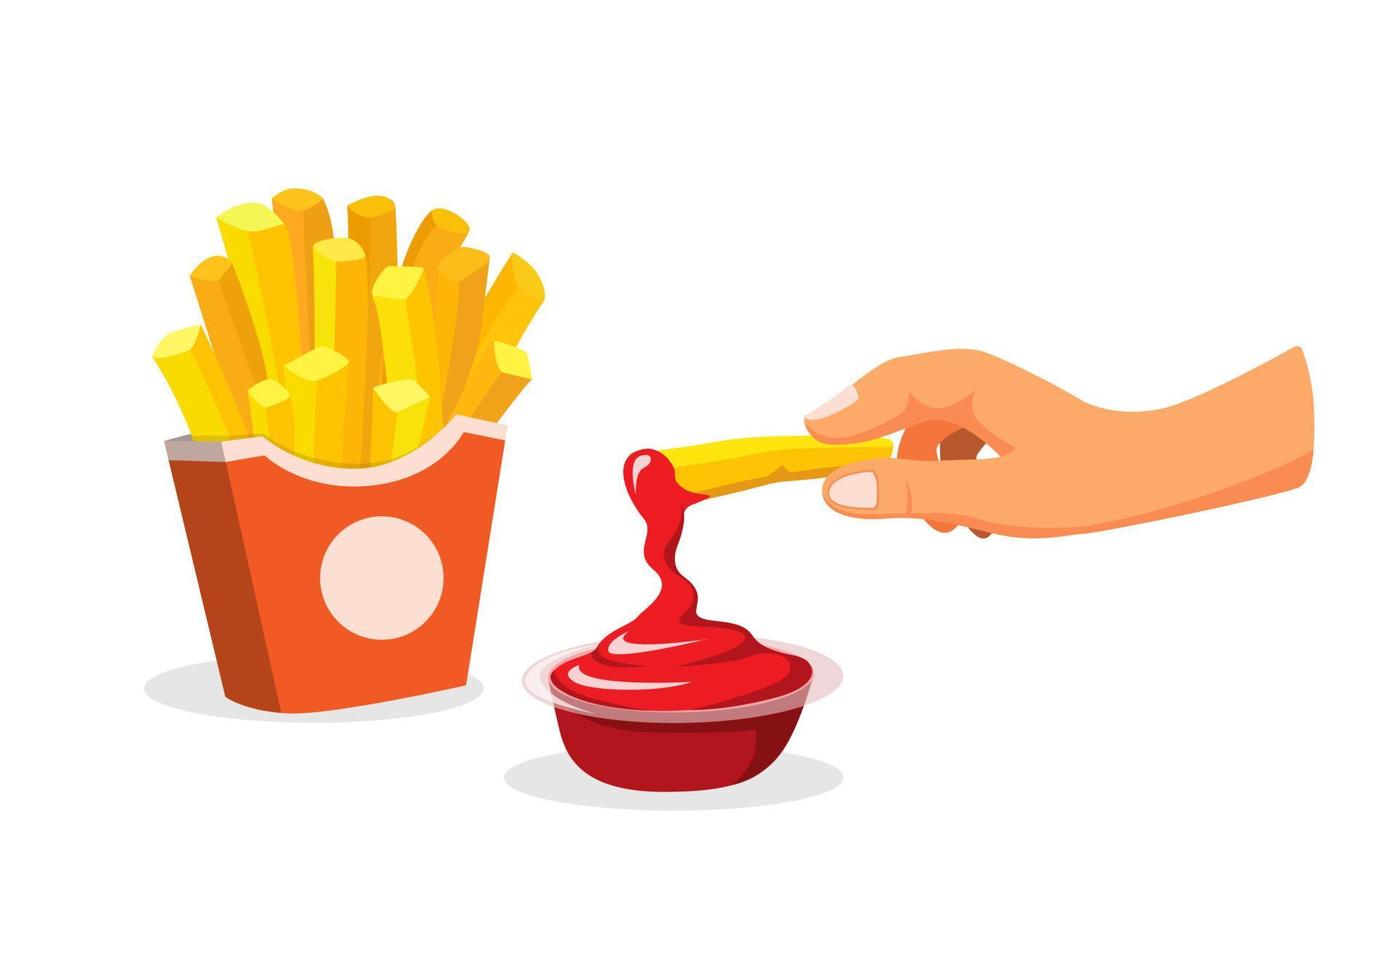 handdopp pommes frites till tomatsås. snack potatis snabbmat meny symbol i tecknad illustration vektor